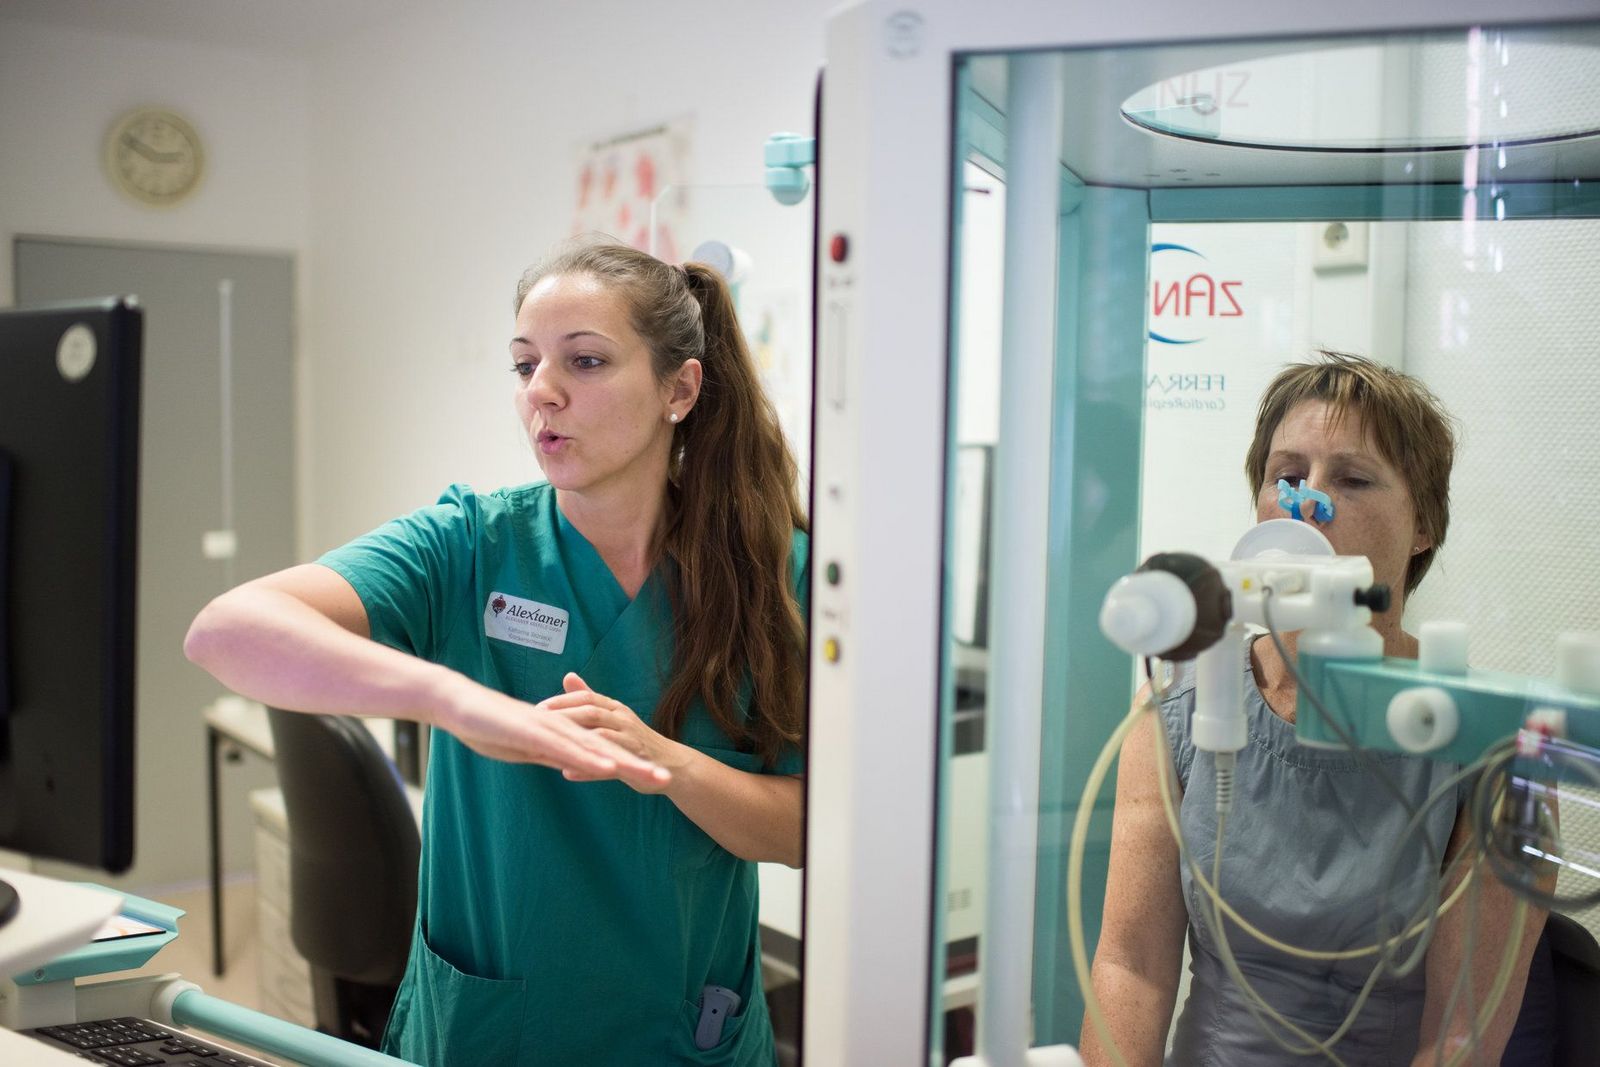 Medizinisch-technische Assistentin führt Lungenfunktionsmessung, die sogenannte Spirometrie, in einer luftdicht abgeschlossenen Glaskabine (Bodyplethysmographie) durch. Die Patientin bläst dabei in ein vorbereitetes Mundstück